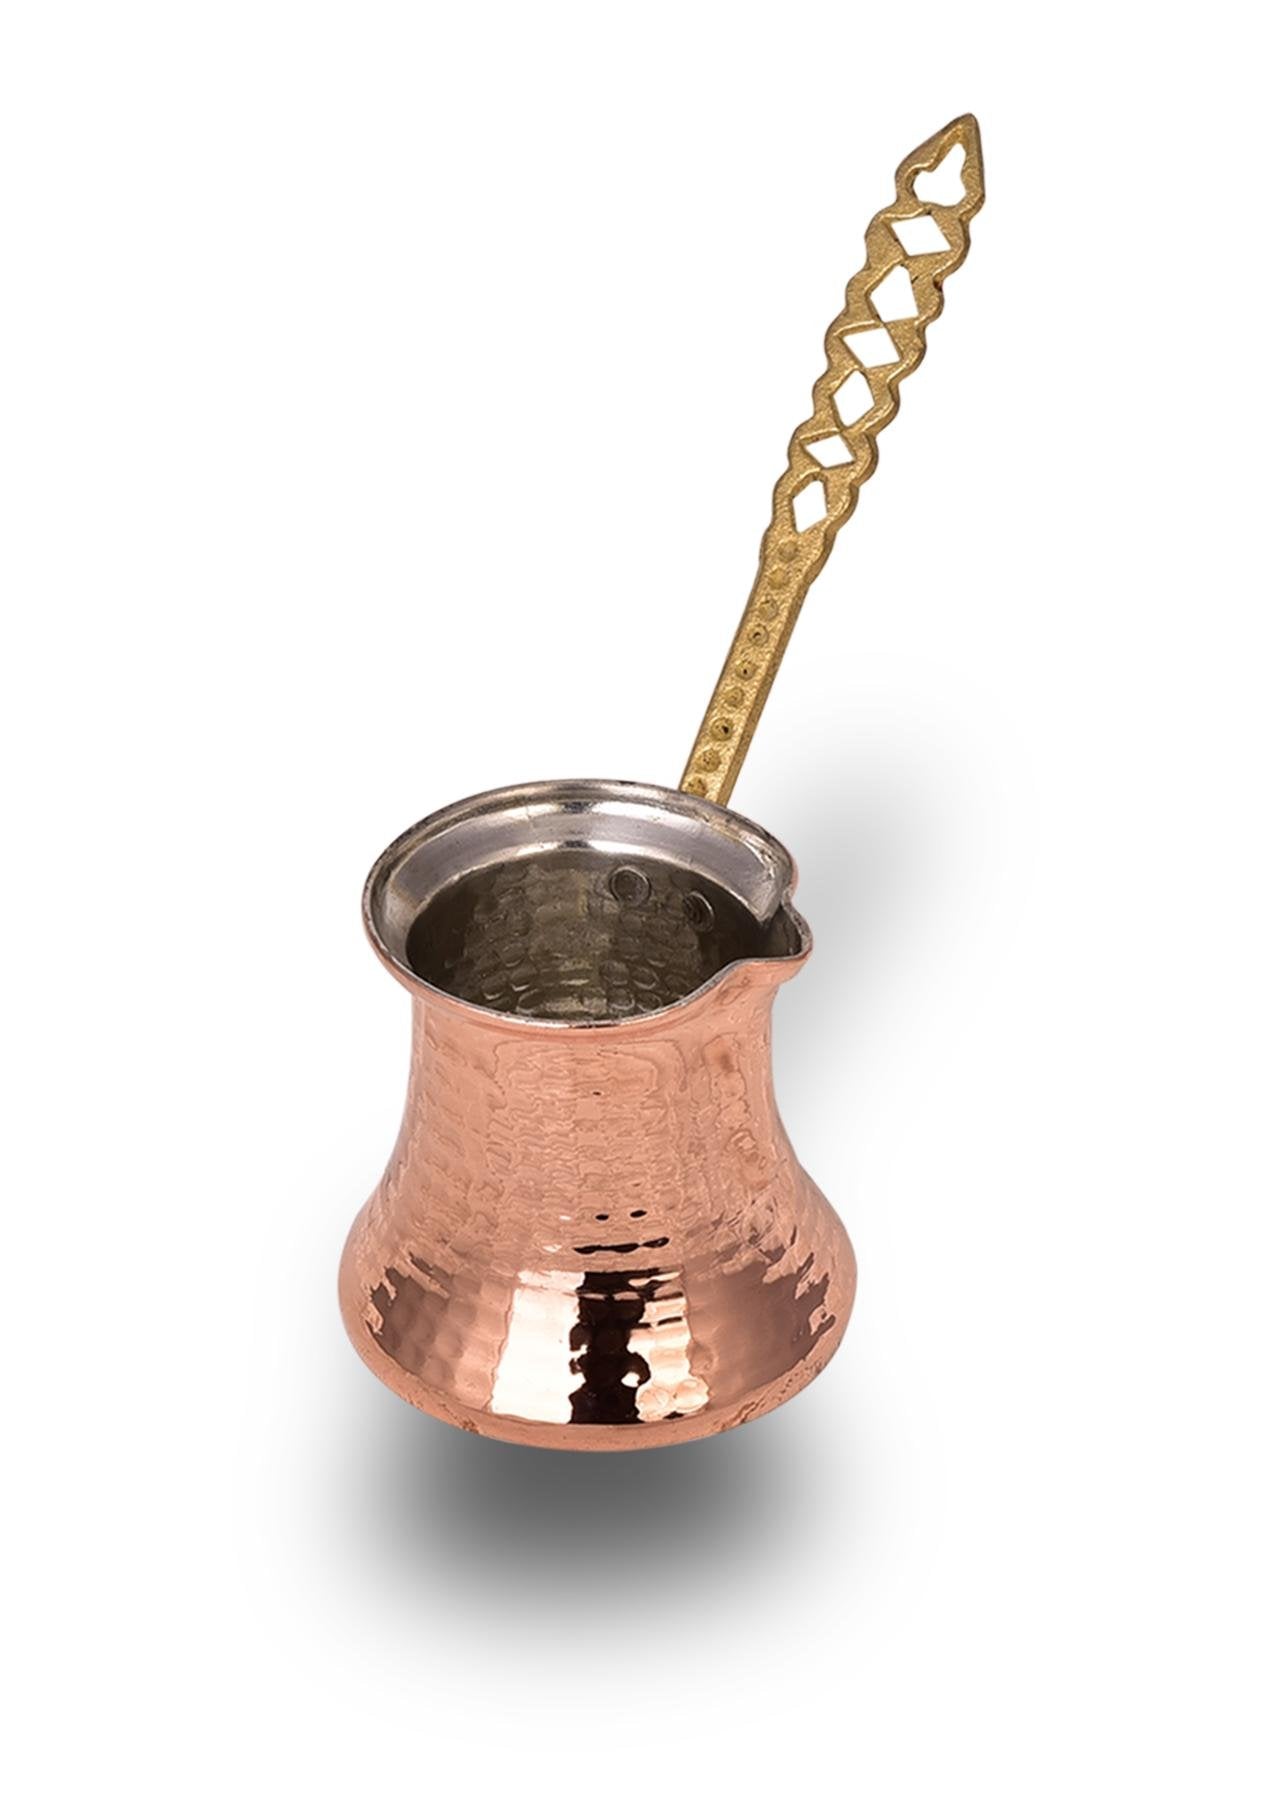 Copper Kervan Coffee Pot 9.8 Cm